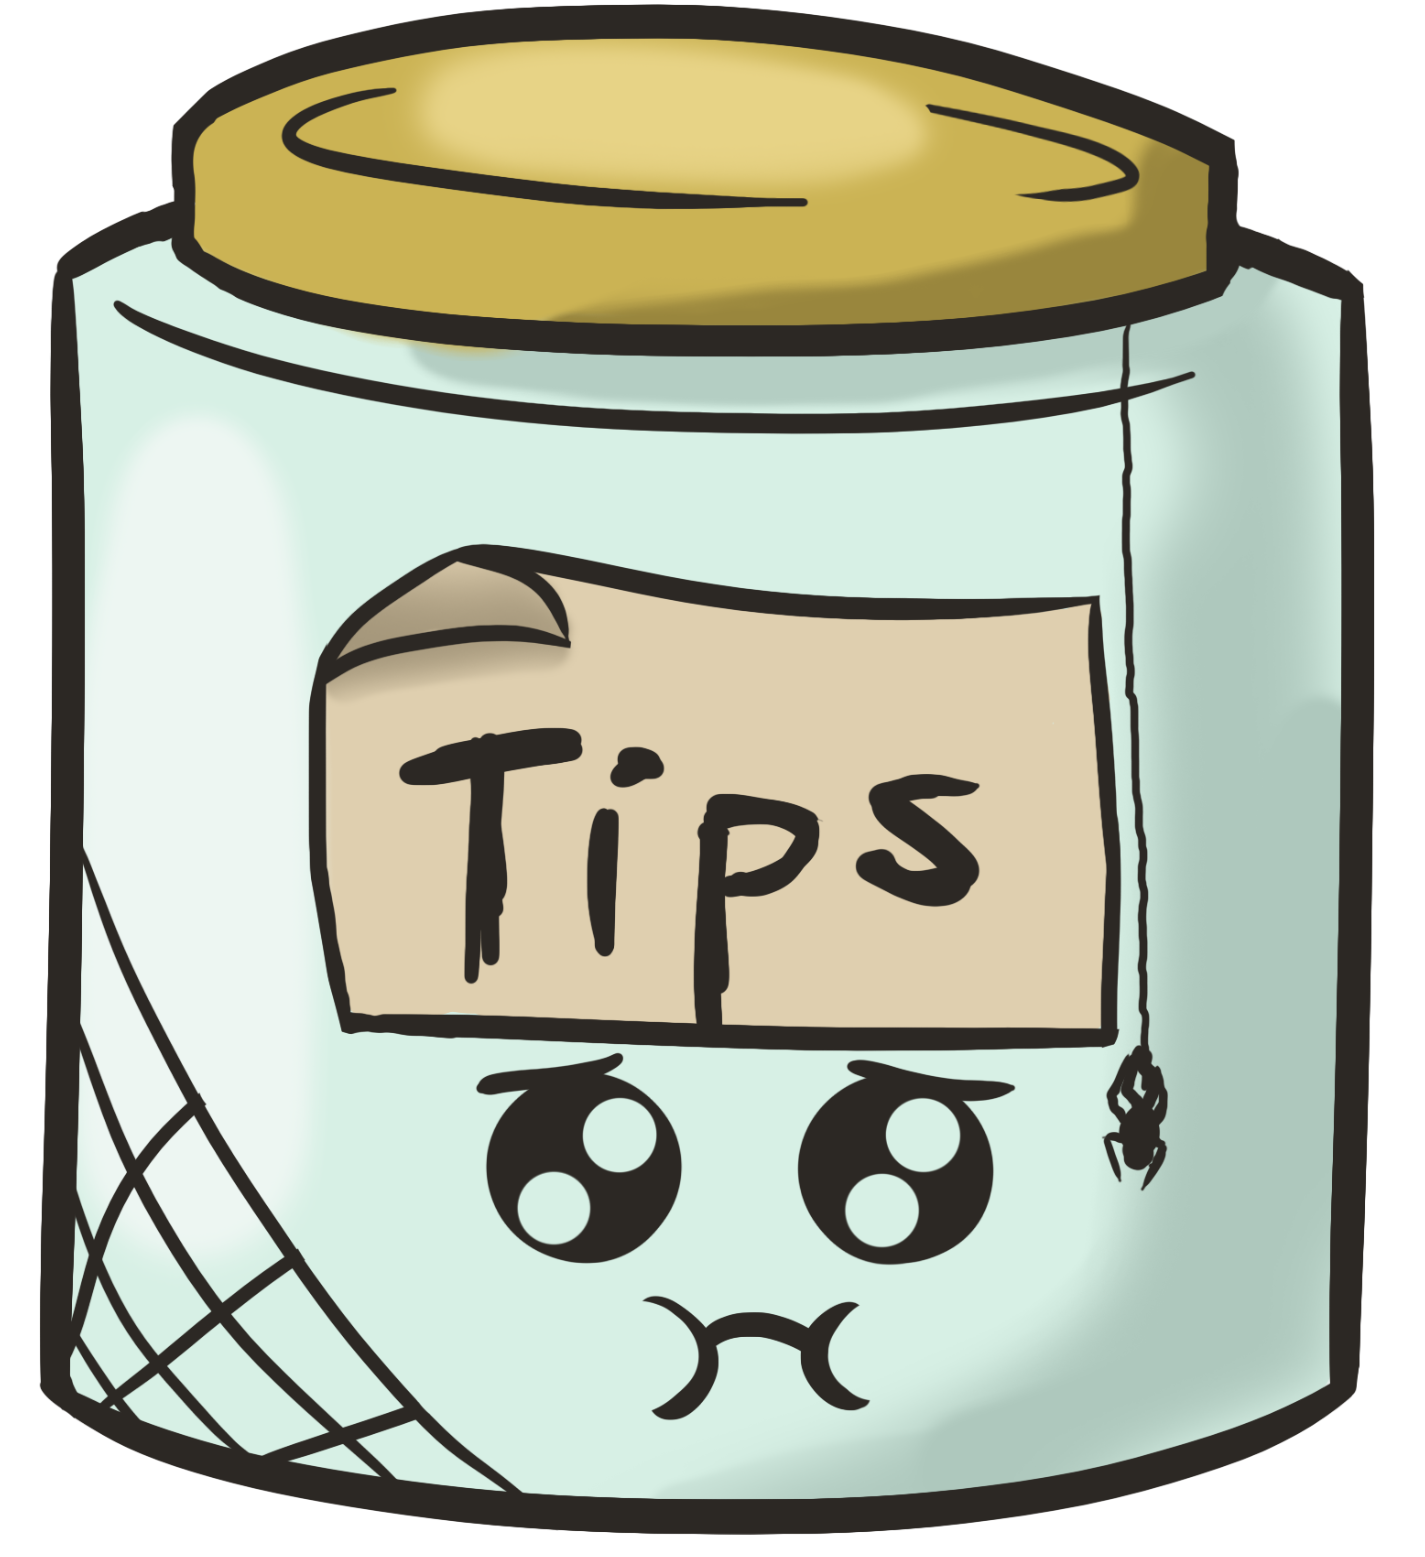 Jar clipart tip jar, Jar tip jar Transparent FREE for download on